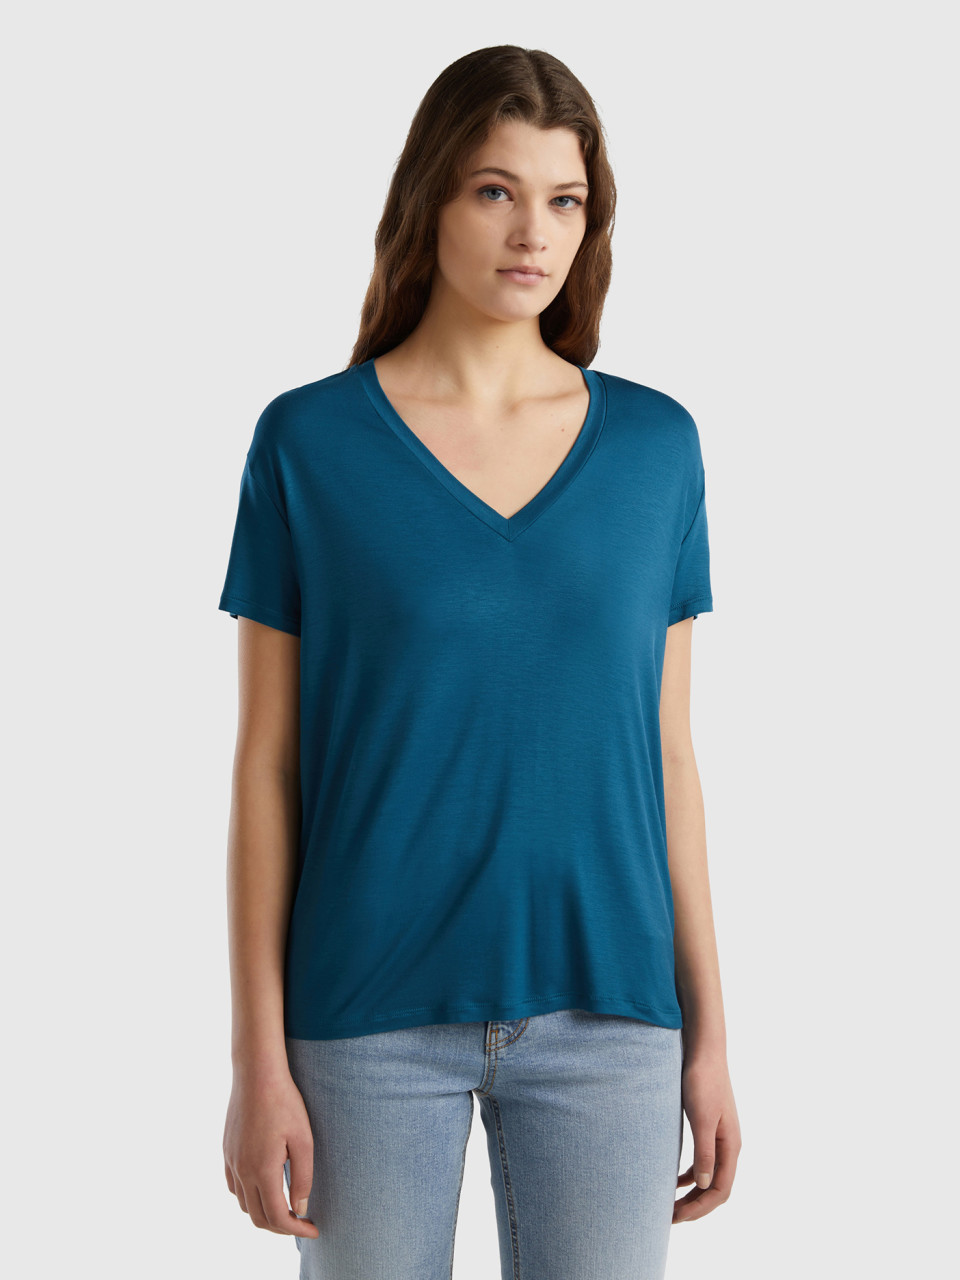 Benetton, Camiseta De Viscosa Sostenible Elástica, Verde Petróleo, Mujer